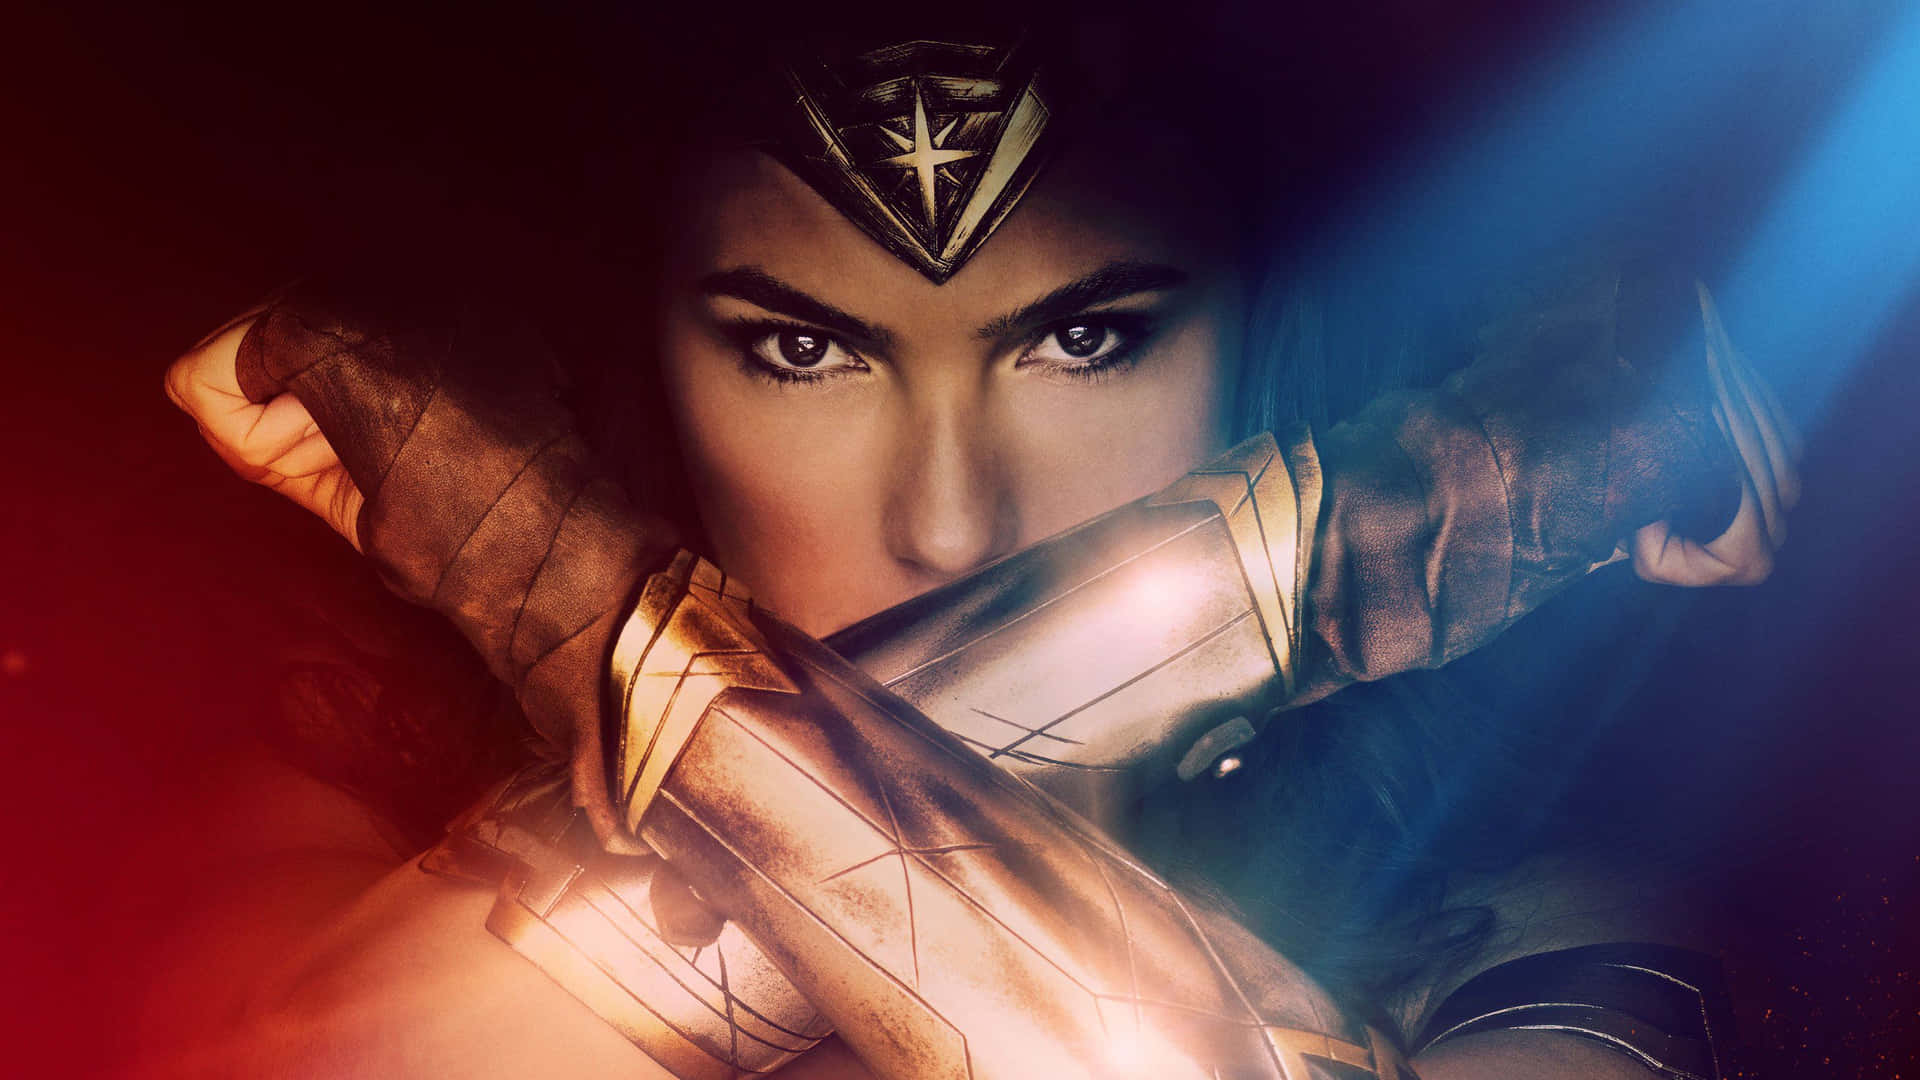 Wonderwoman En Pose Heroica.